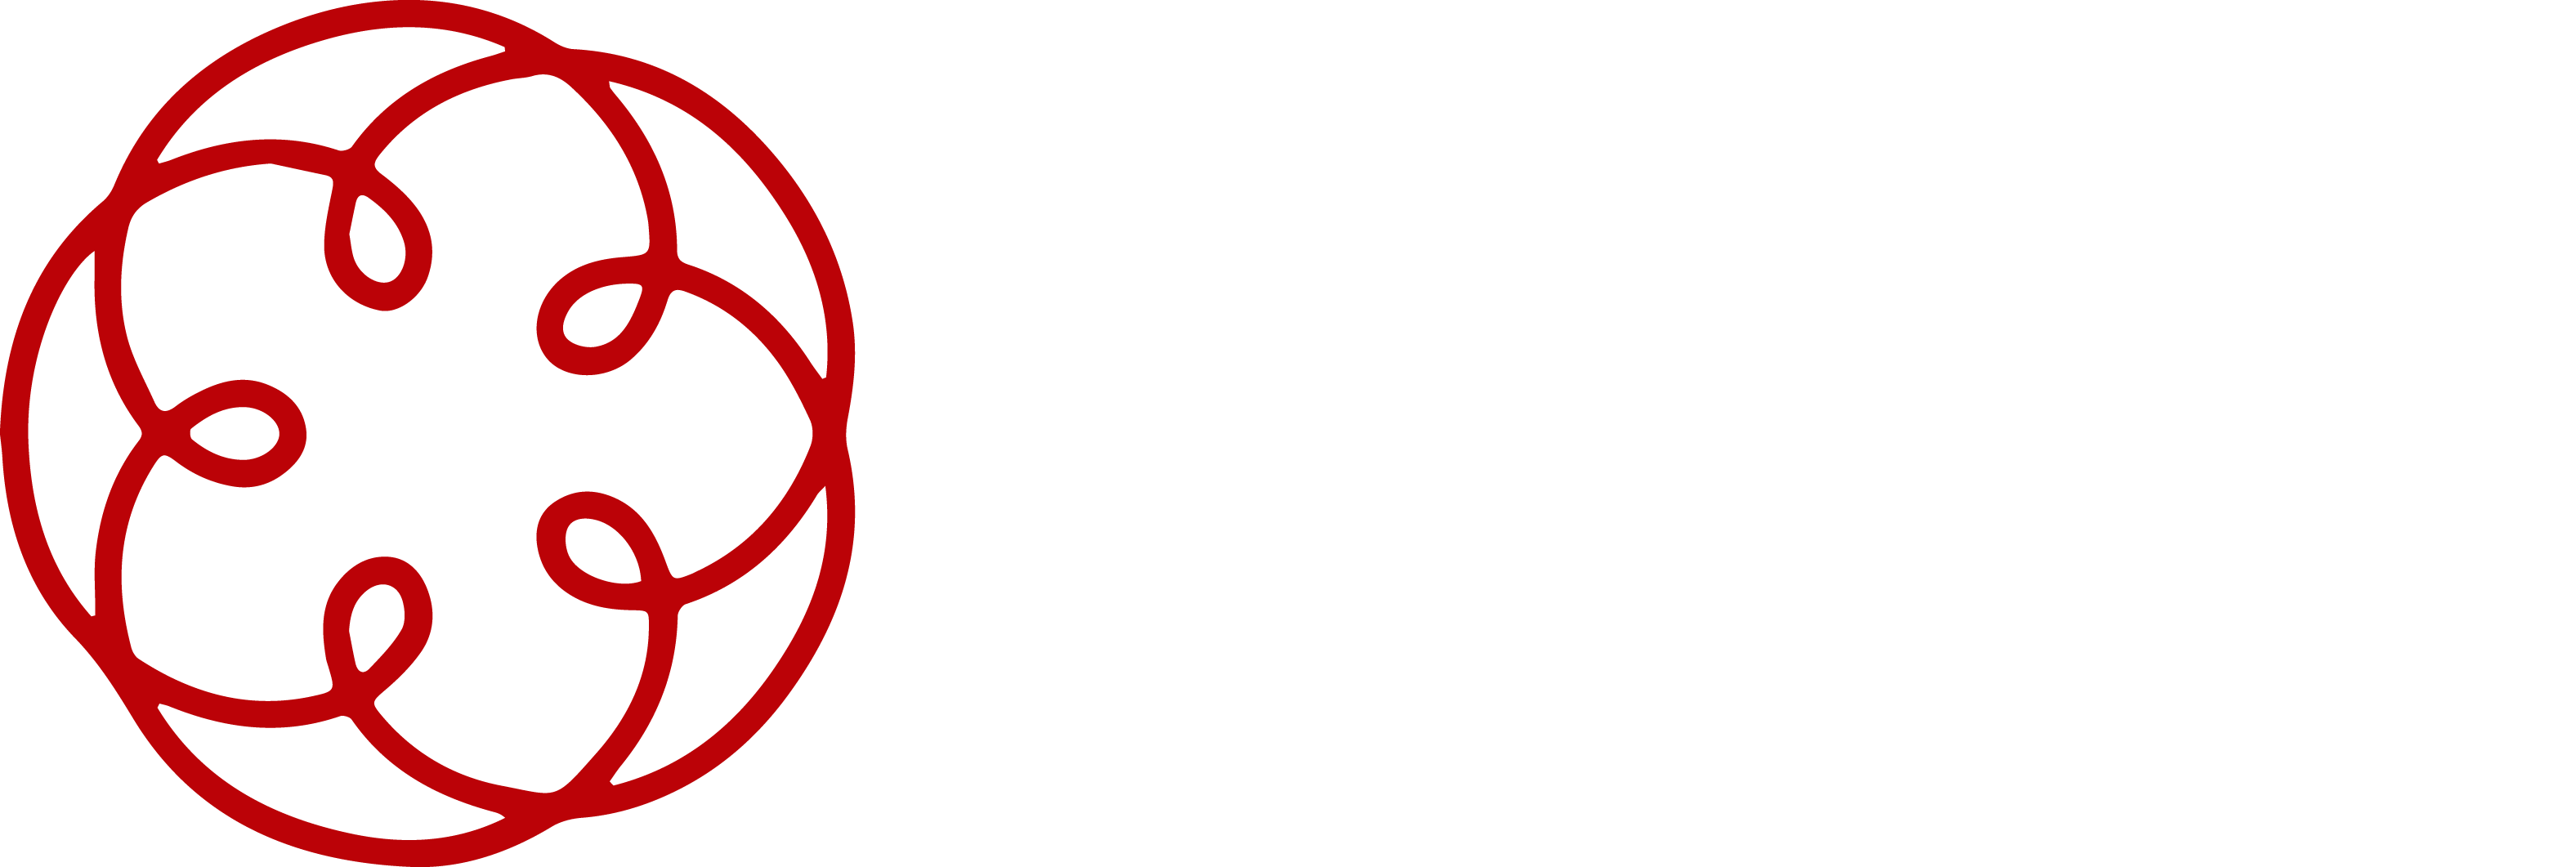 Studio Commerciale Rainone